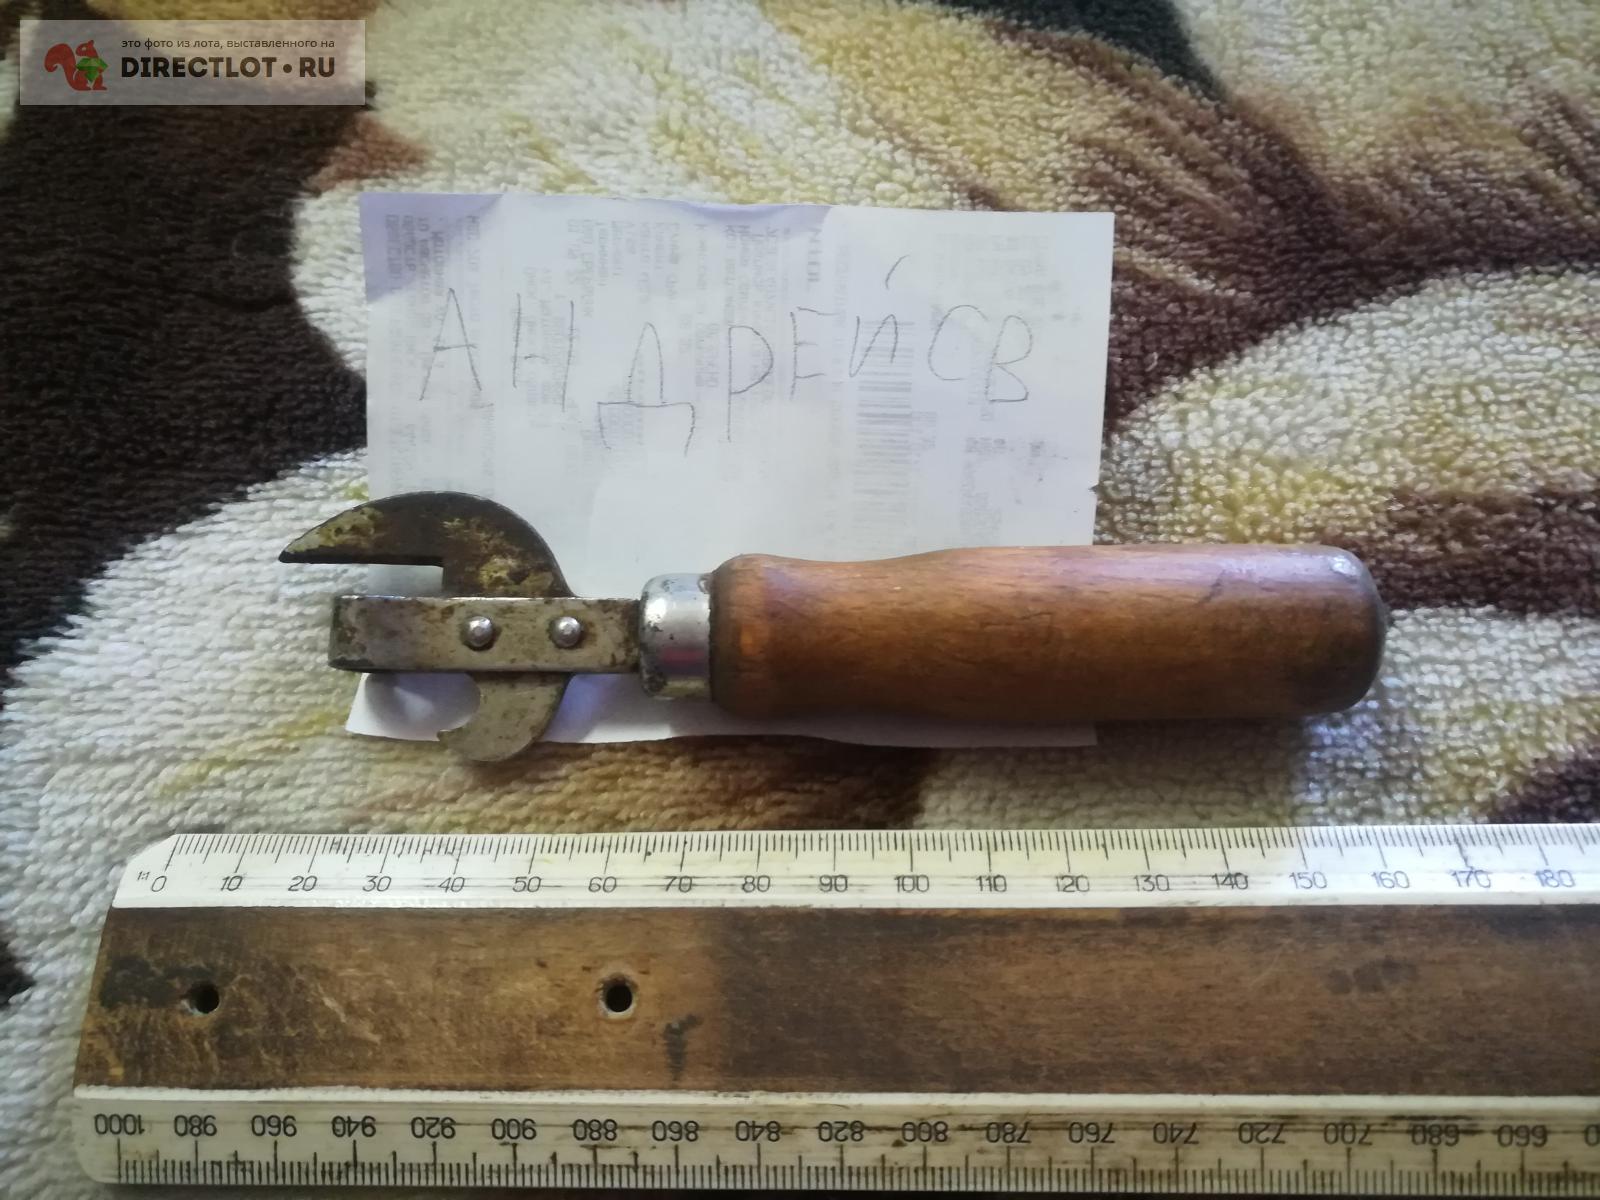 консервный нож артельный  в Омске цена 300 Р на DIRECTLOT.RU .